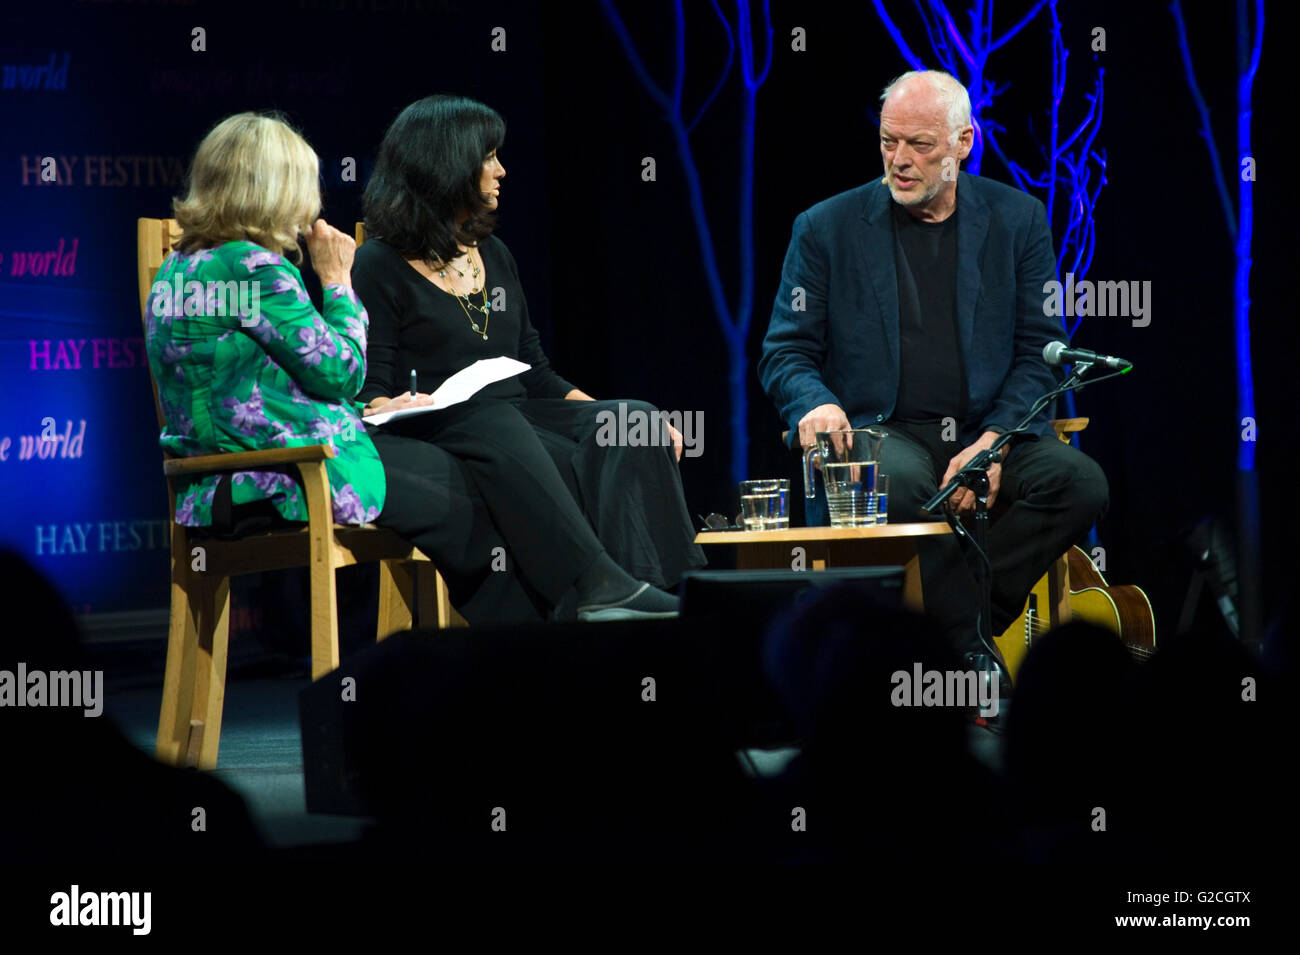 David Gilmour, guitariste de Pink Floyd à parler de sa vie et de travail avec sa femme Polly Samson sur scène à Hay Festival 2016 Banque D'Images